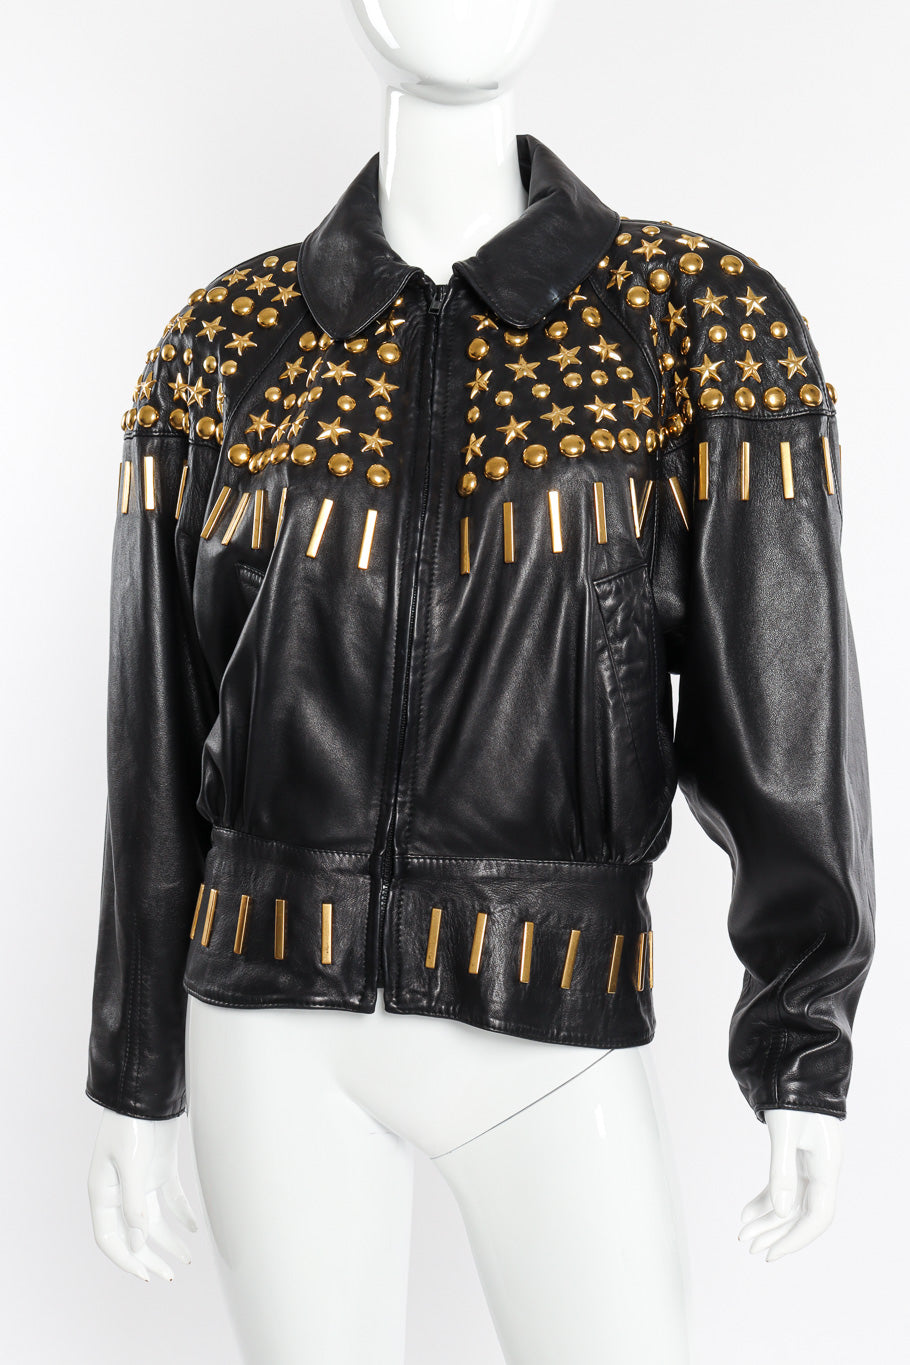 Vintage Lina Lee Studded Leather Jacket front on mannequin closeup @recessla